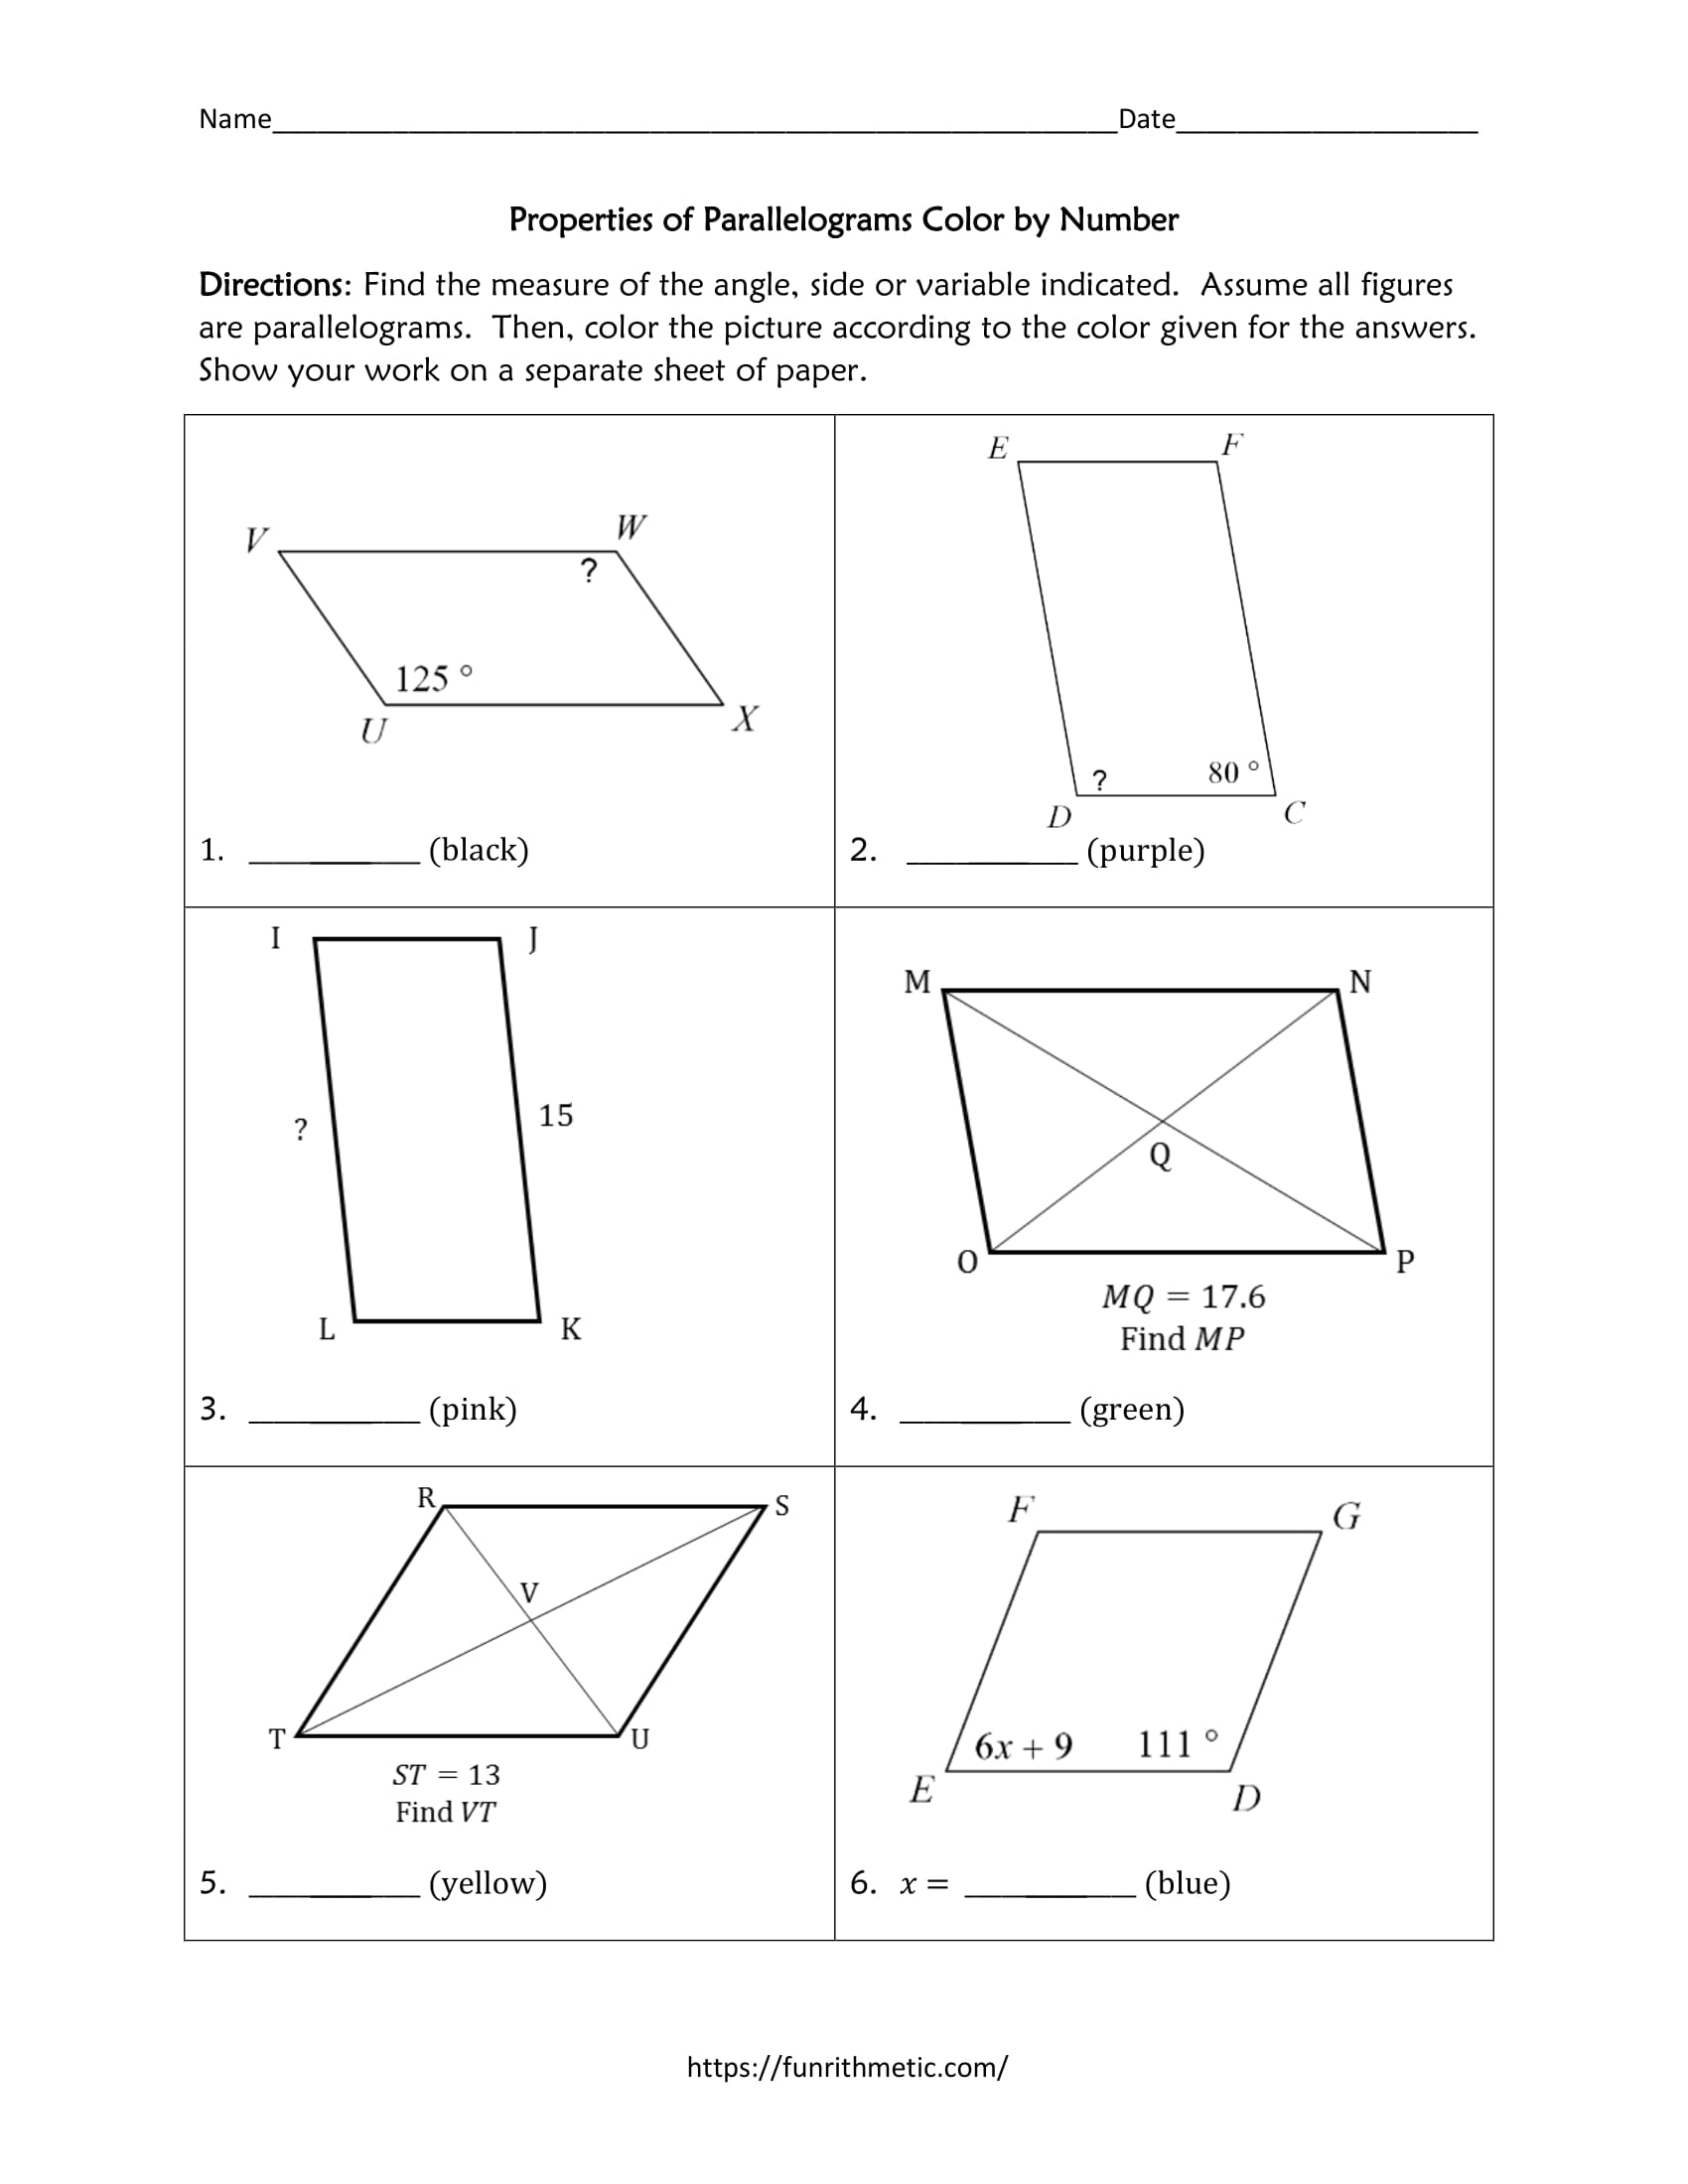 properties of parallelograms assignment